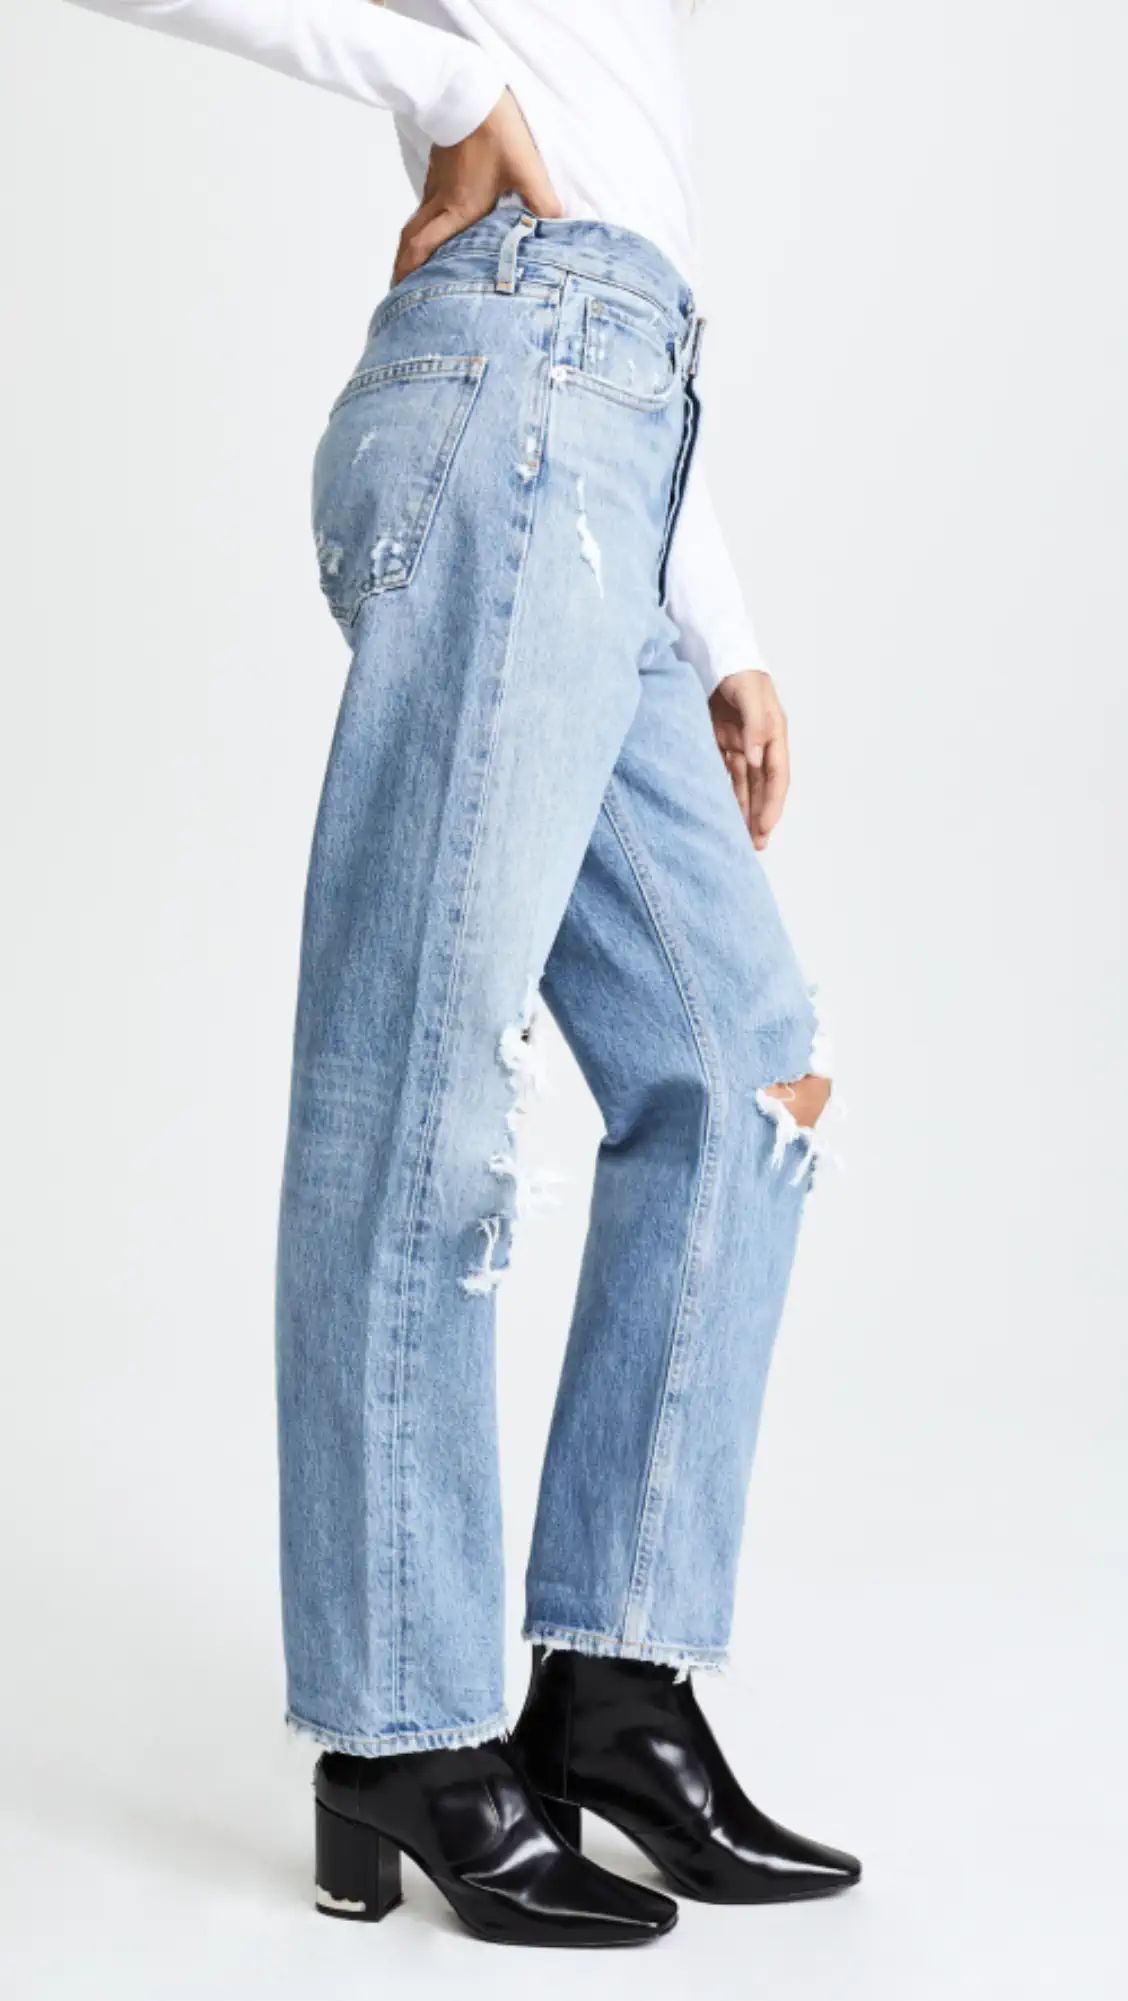 '90s Fit Loose Fit Jeans | Shopbop